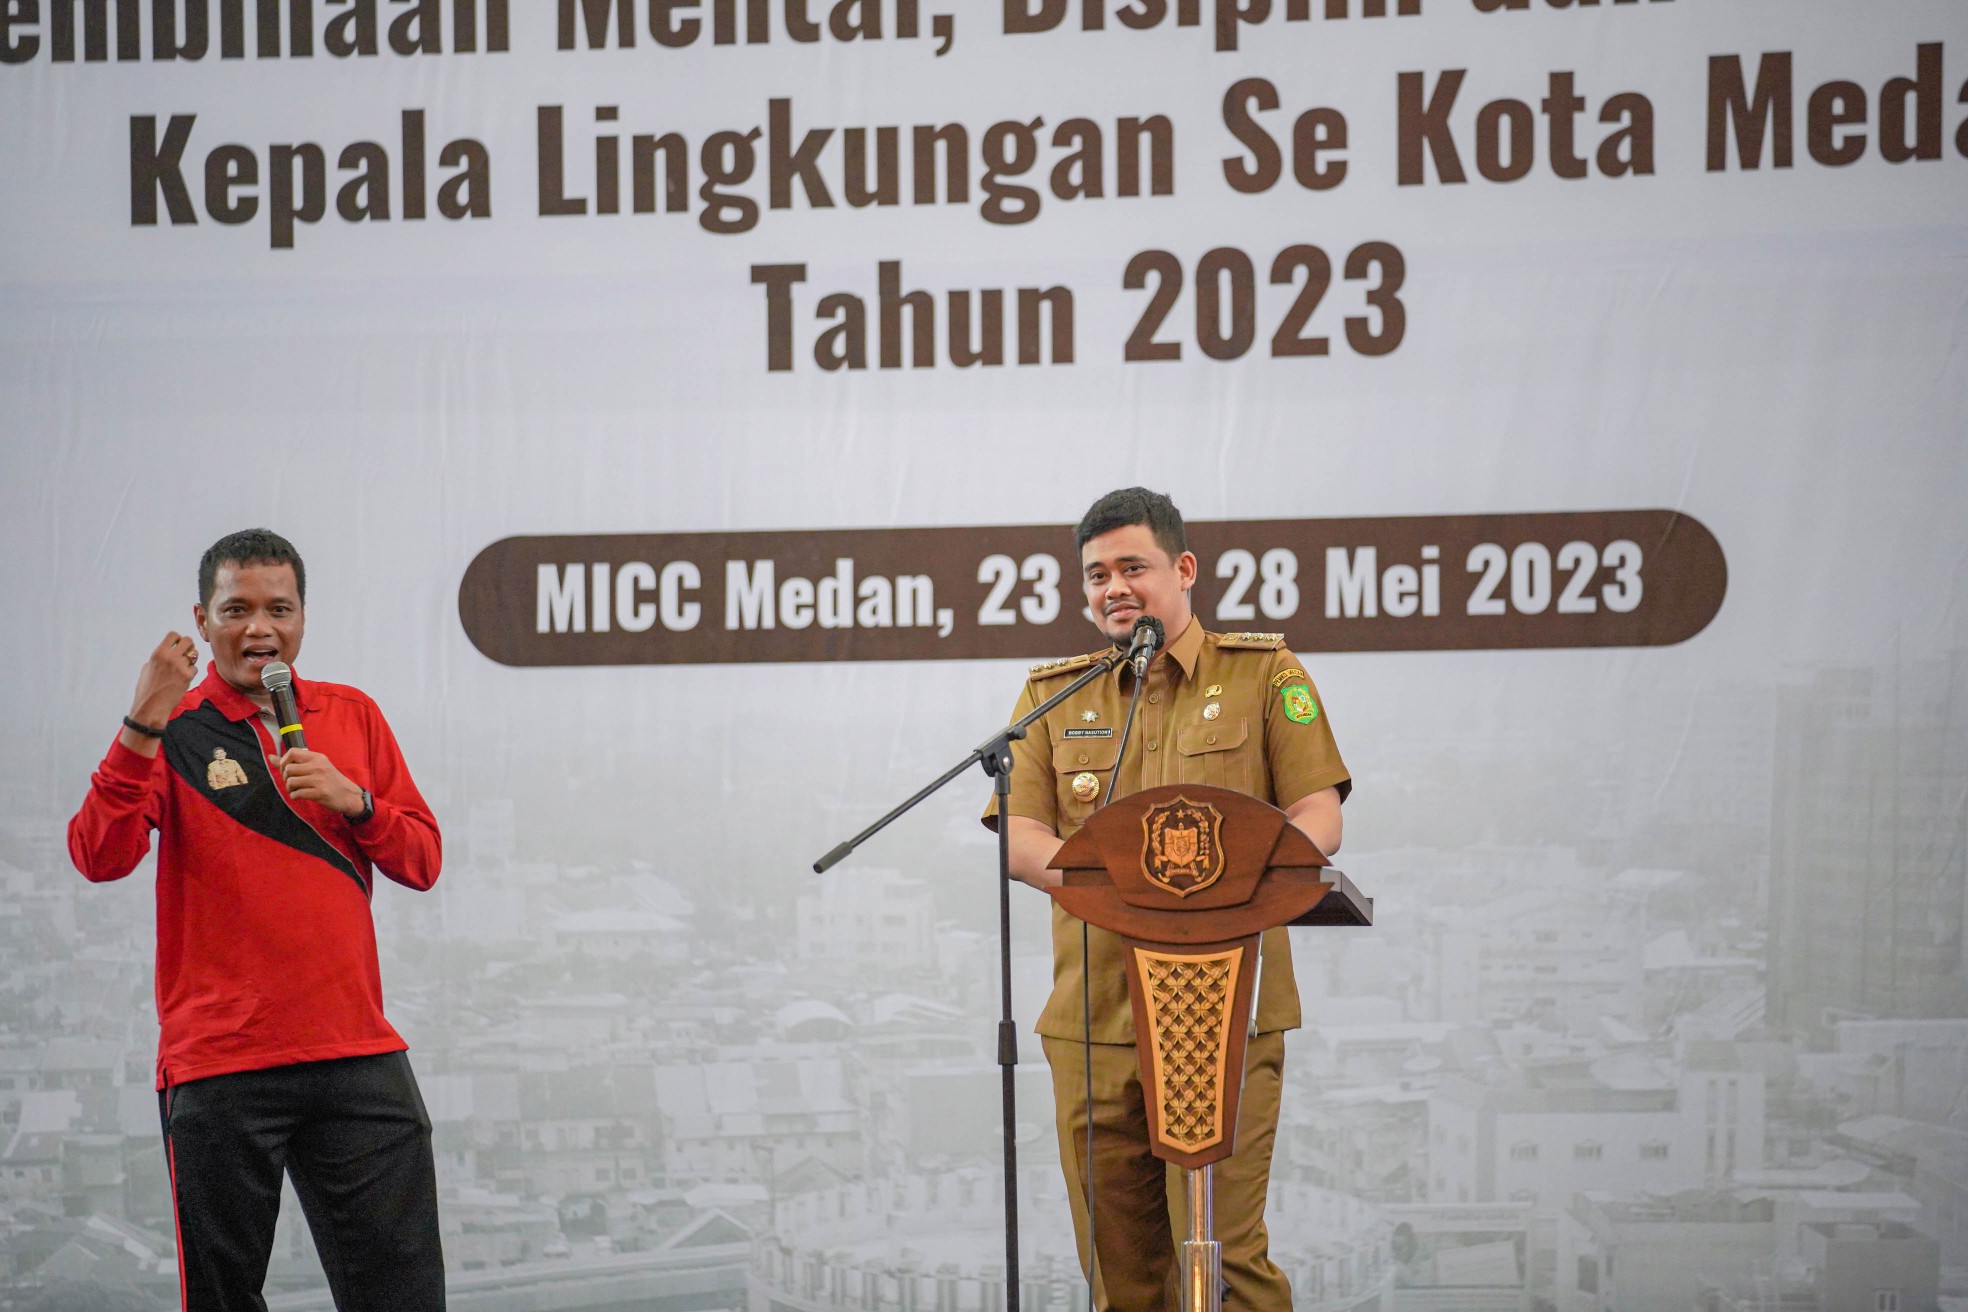 Wali Kota Medan Bobby Nasution Sampaikan Tiga Pesan Penting kepada Kepling Sekota Medan